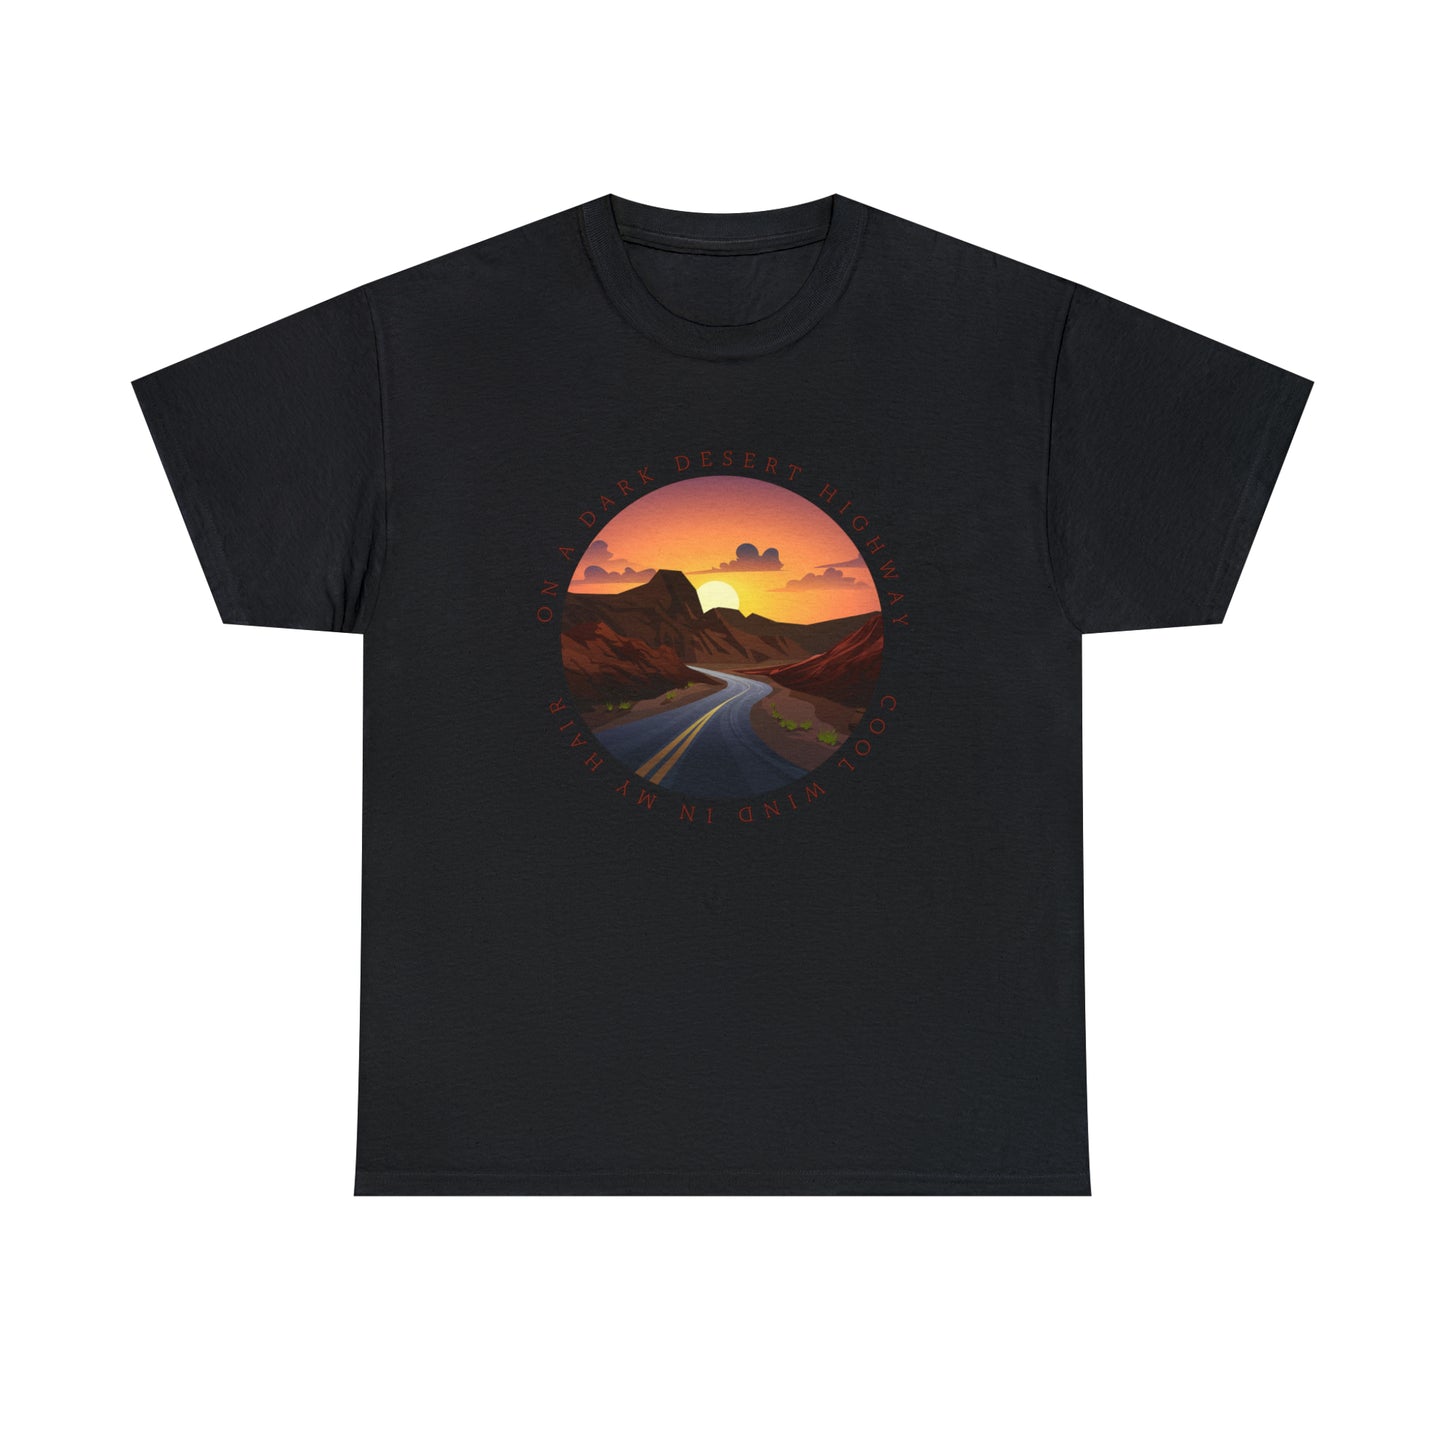 Desert T-Shirt For Song Lyrics TShirt For Musician T Shirt For Musical Quote Shirt For Music Lovers